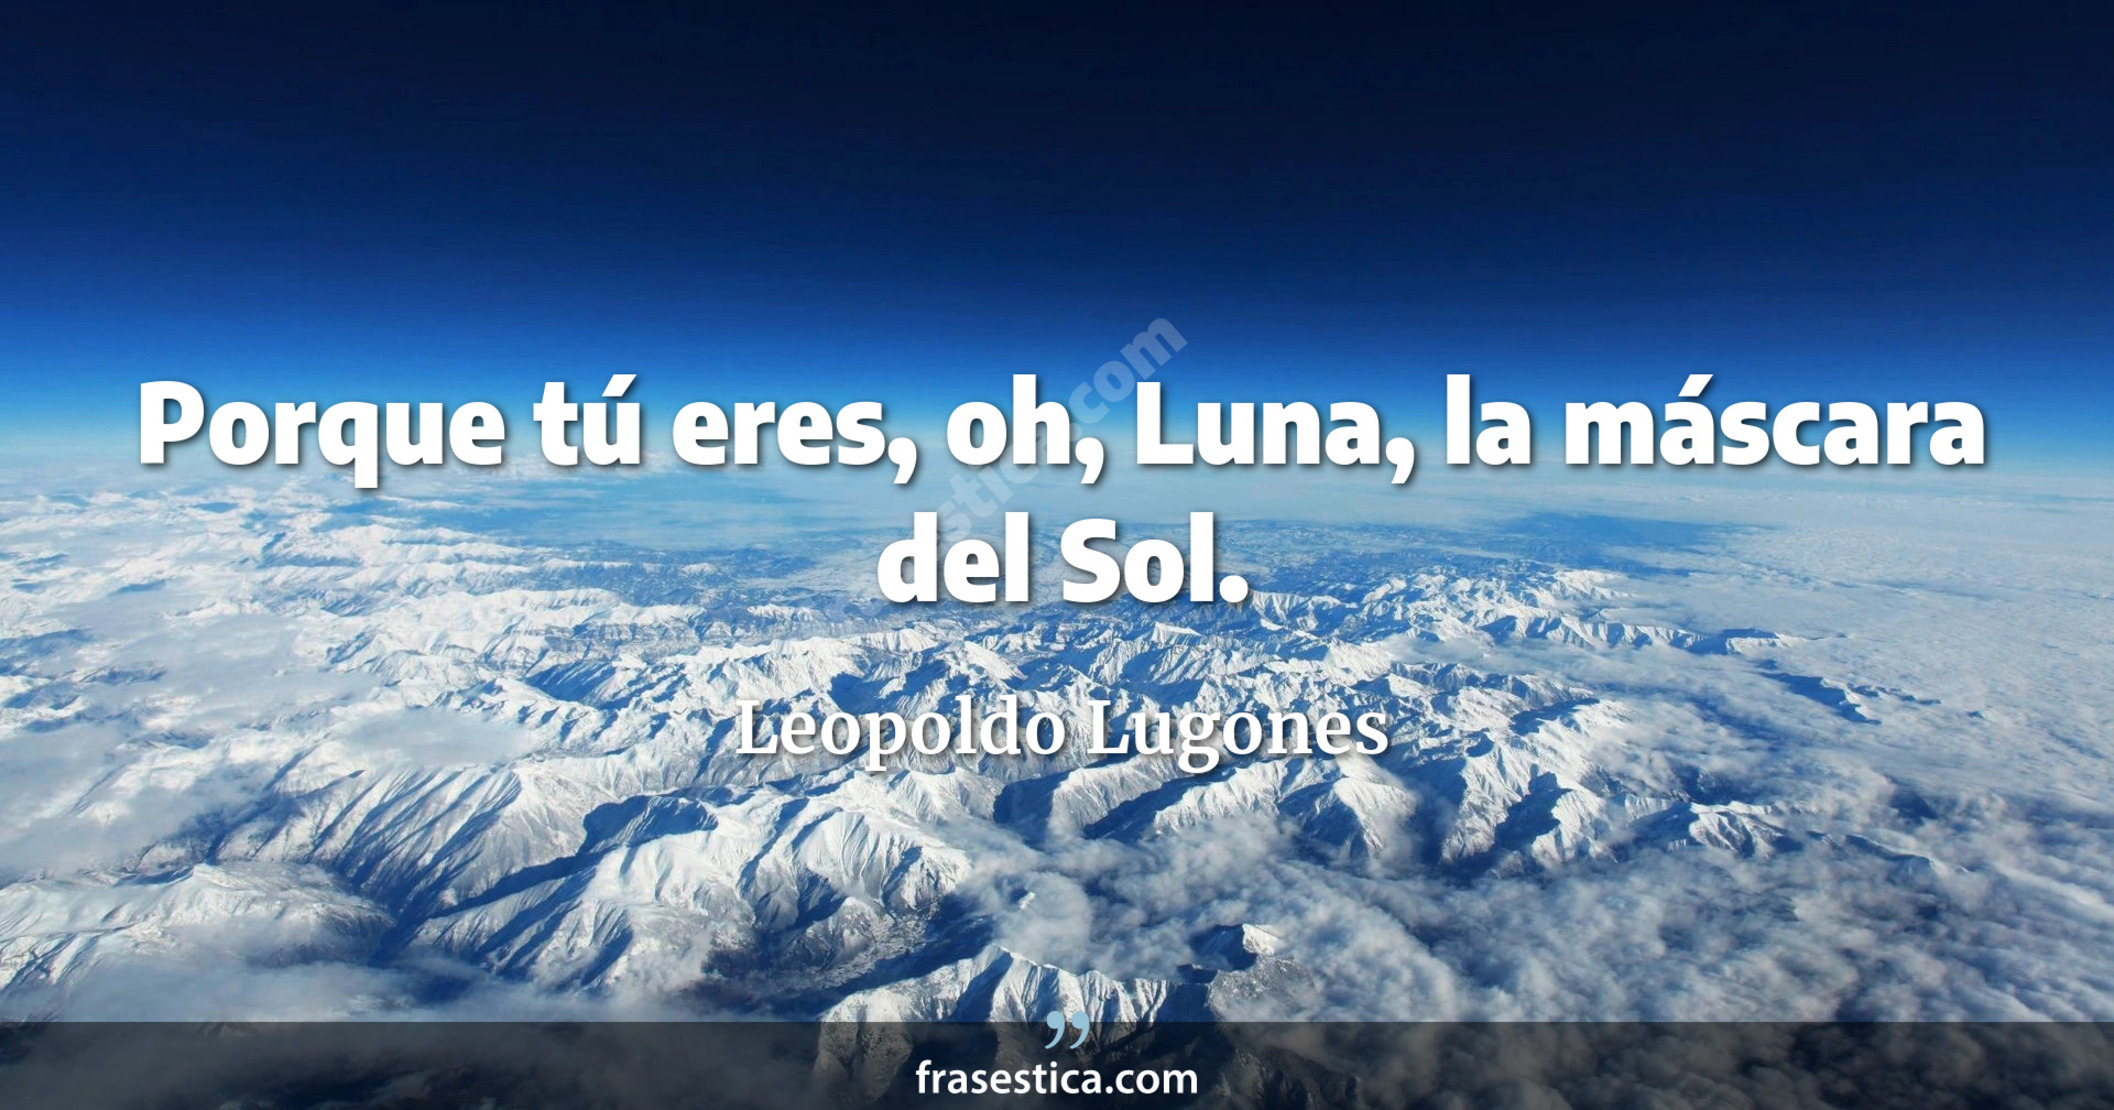 Porque tú eres, oh, Luna, la máscara del Sol. - Leopoldo Lugones